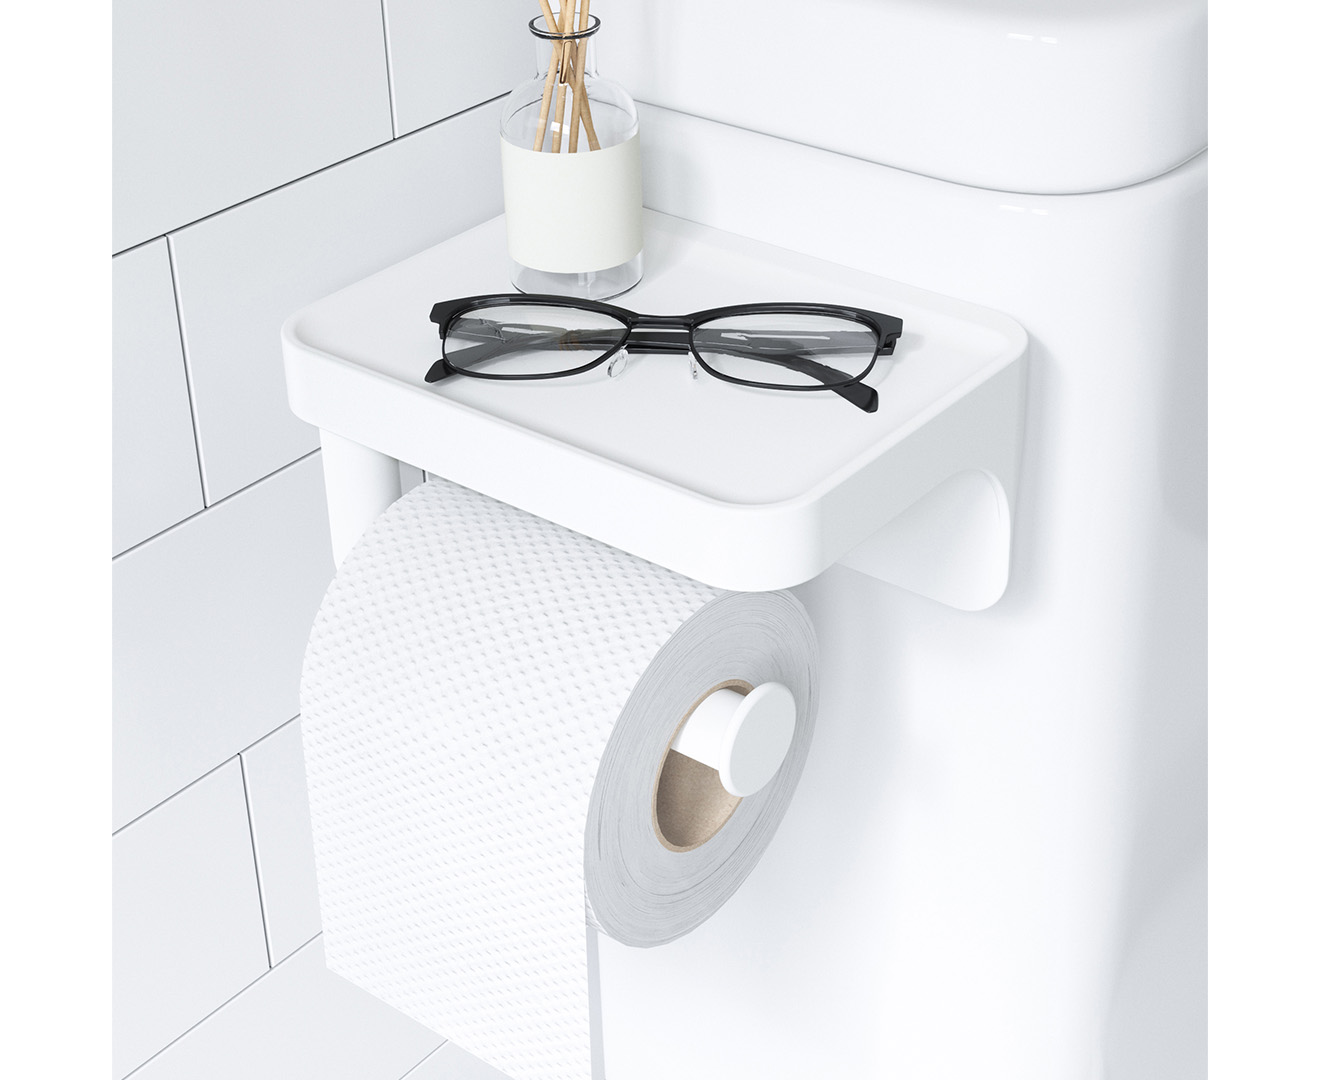 flex surelock toilet paper holder